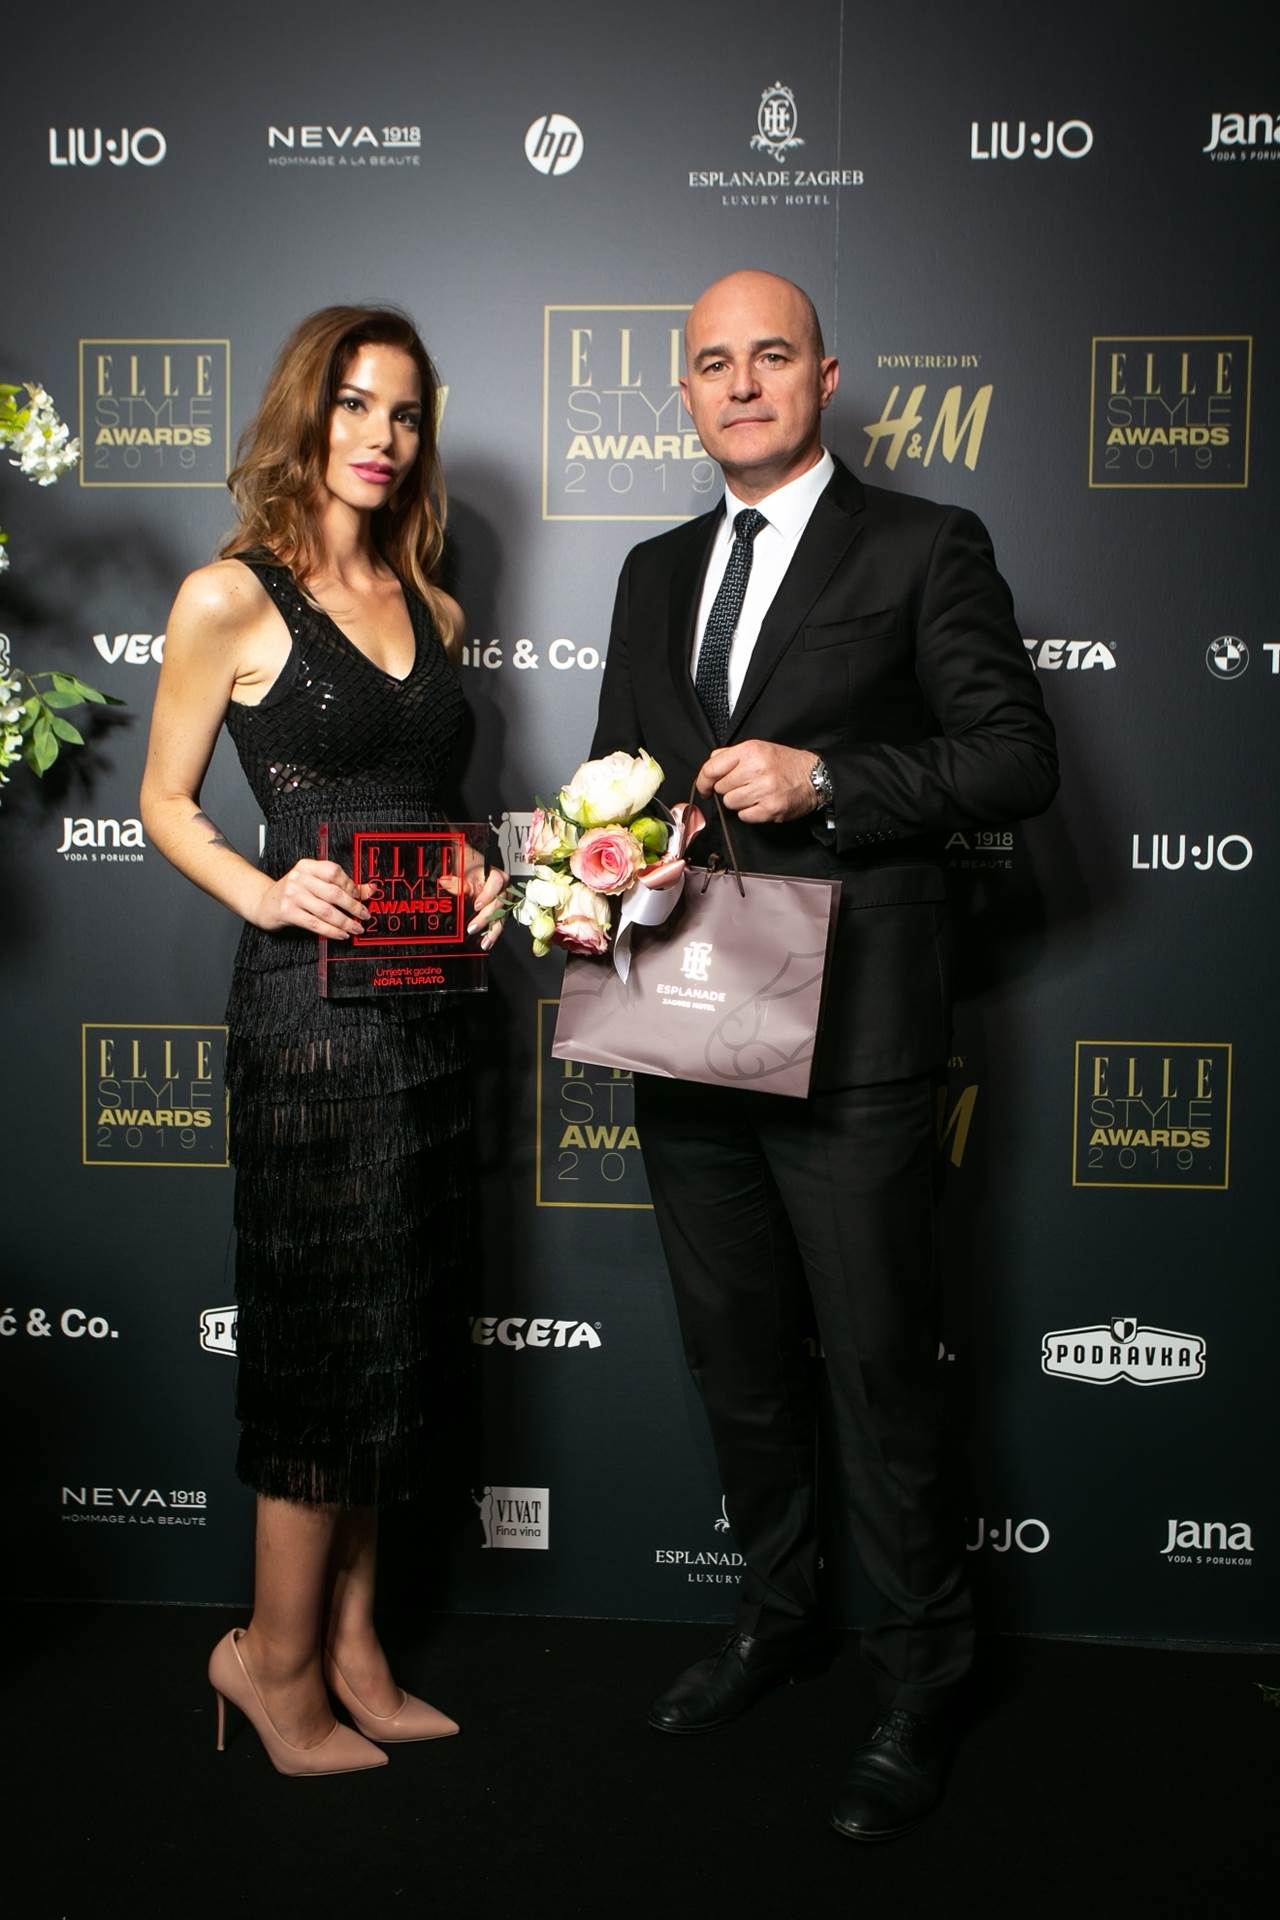 UMJETNIK GODINE by HOTEL ESPLANADE ZAGREB, u ime pobjednice nagradu je preuzela web suradnica Nina Belina I Ivica Maks Krizmanić